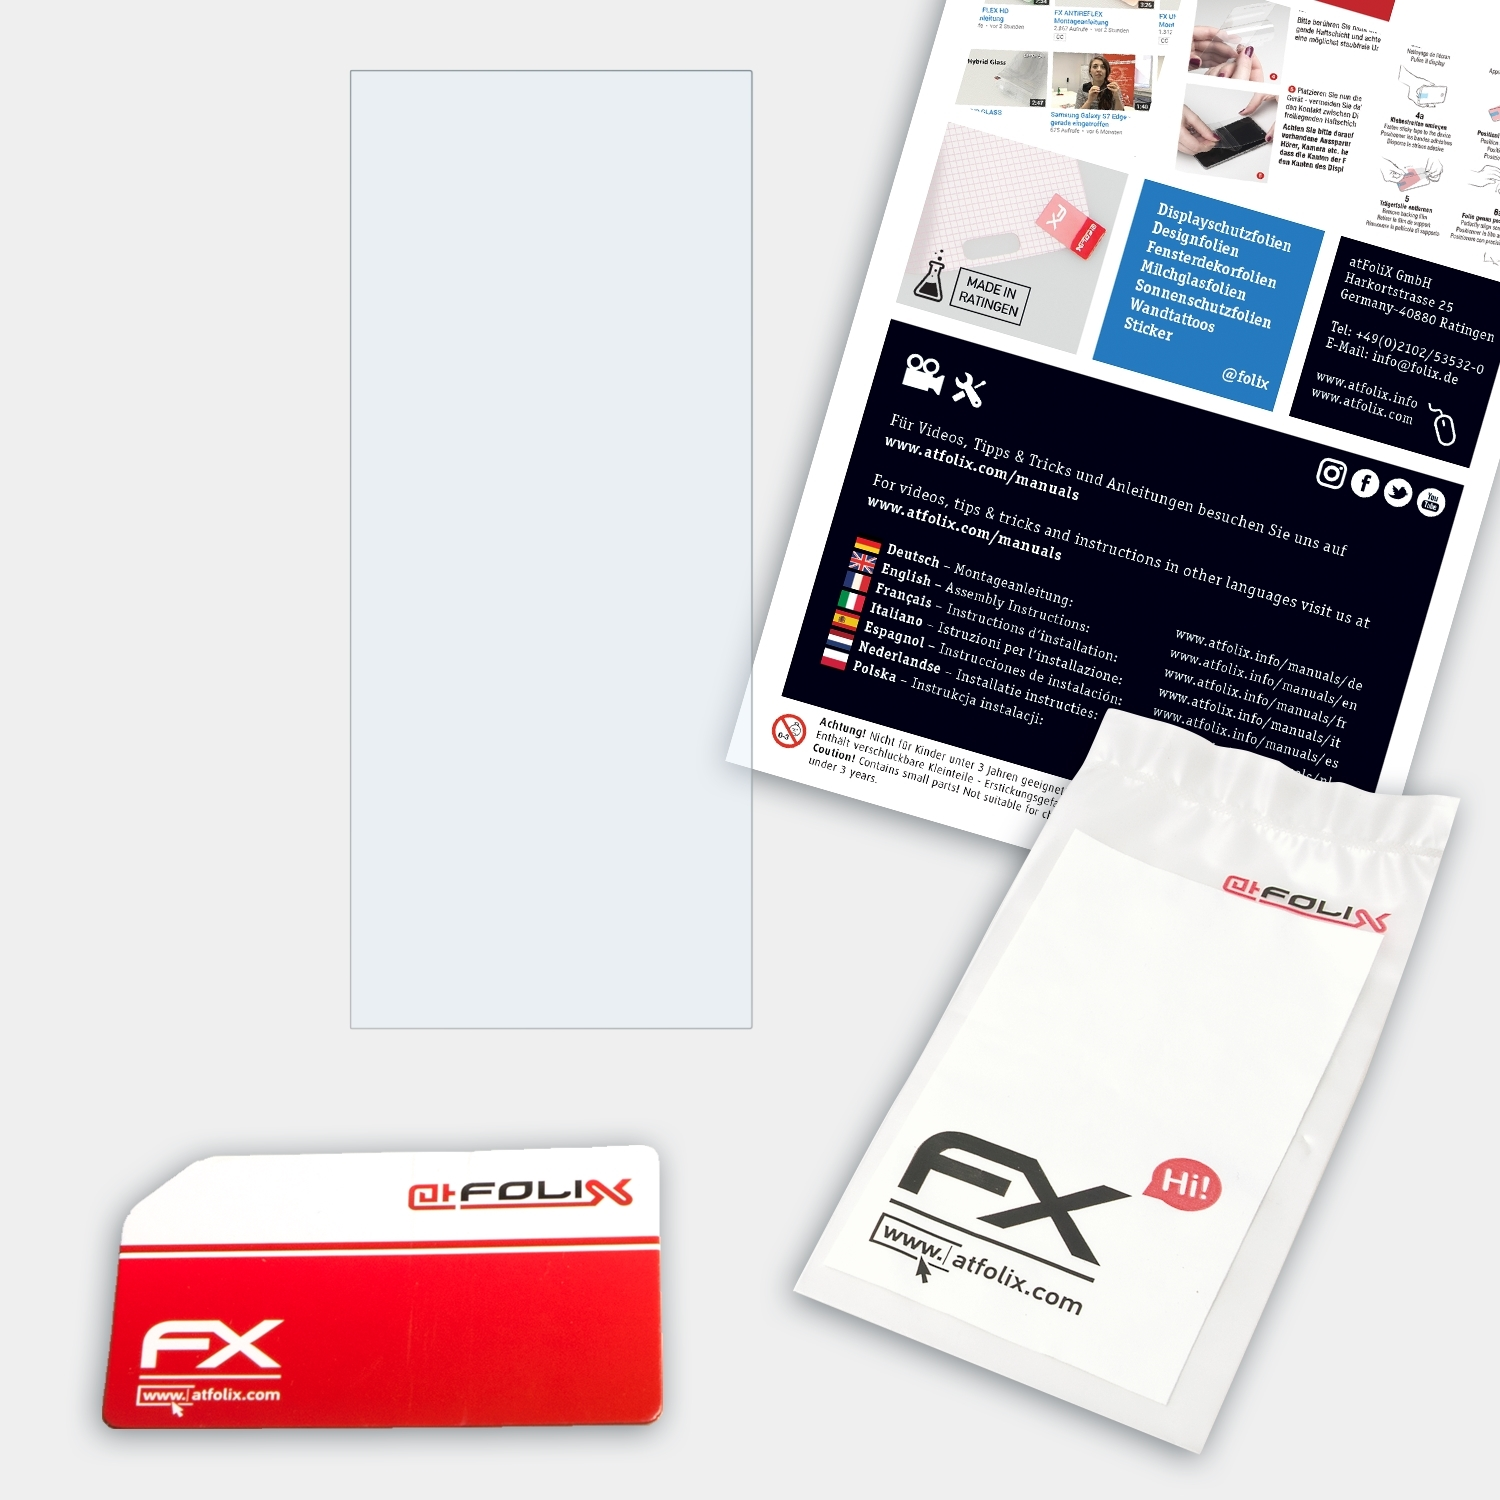 ATFOLIX FX-Clear Displayschutz(für EV3895-BK) FlexScan Eizo